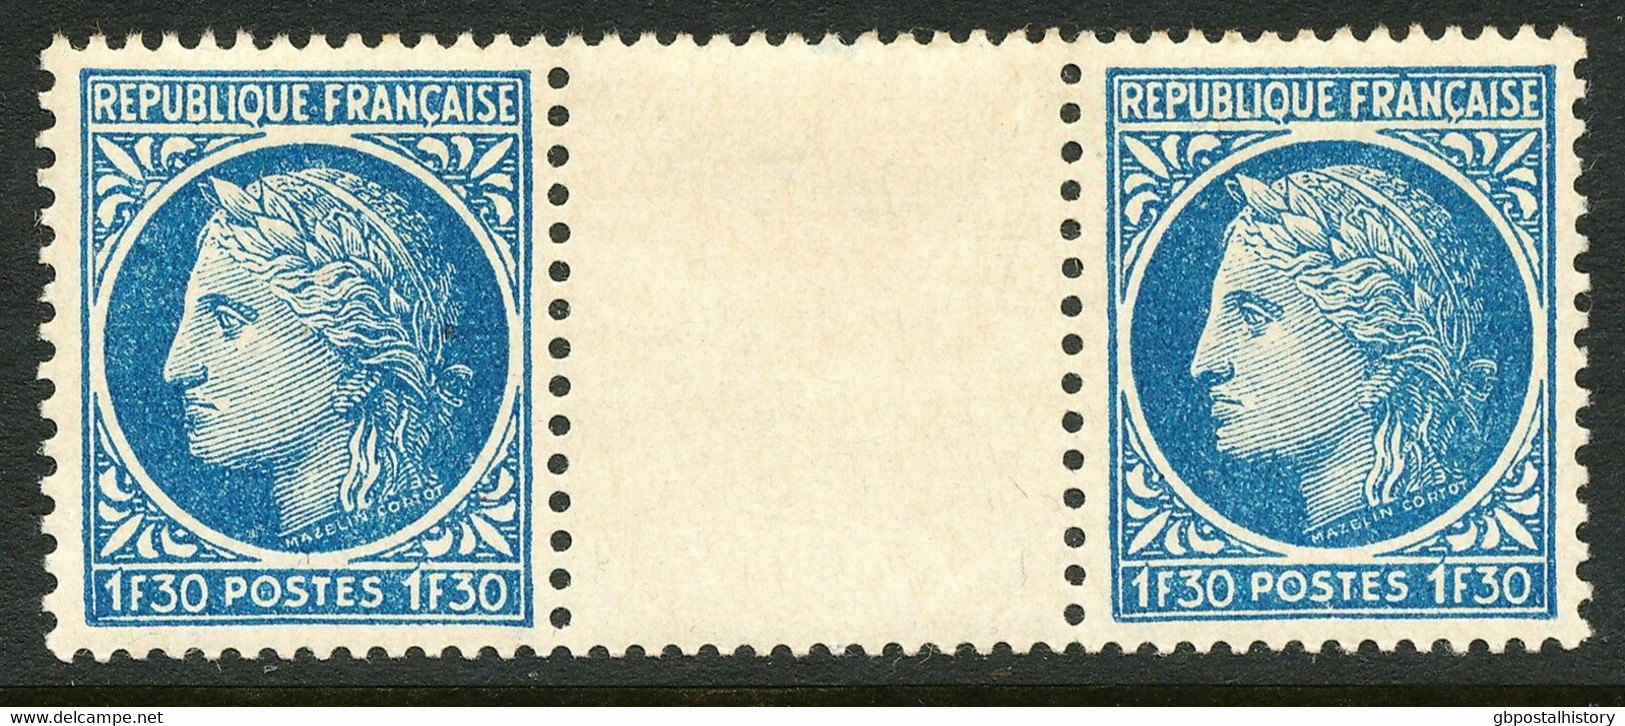 FRANKREICH 1947 Ceres (Type Mazelin) 1.30Fr. ABART Postfrisches Zwischenstegpaar - Ungebraucht